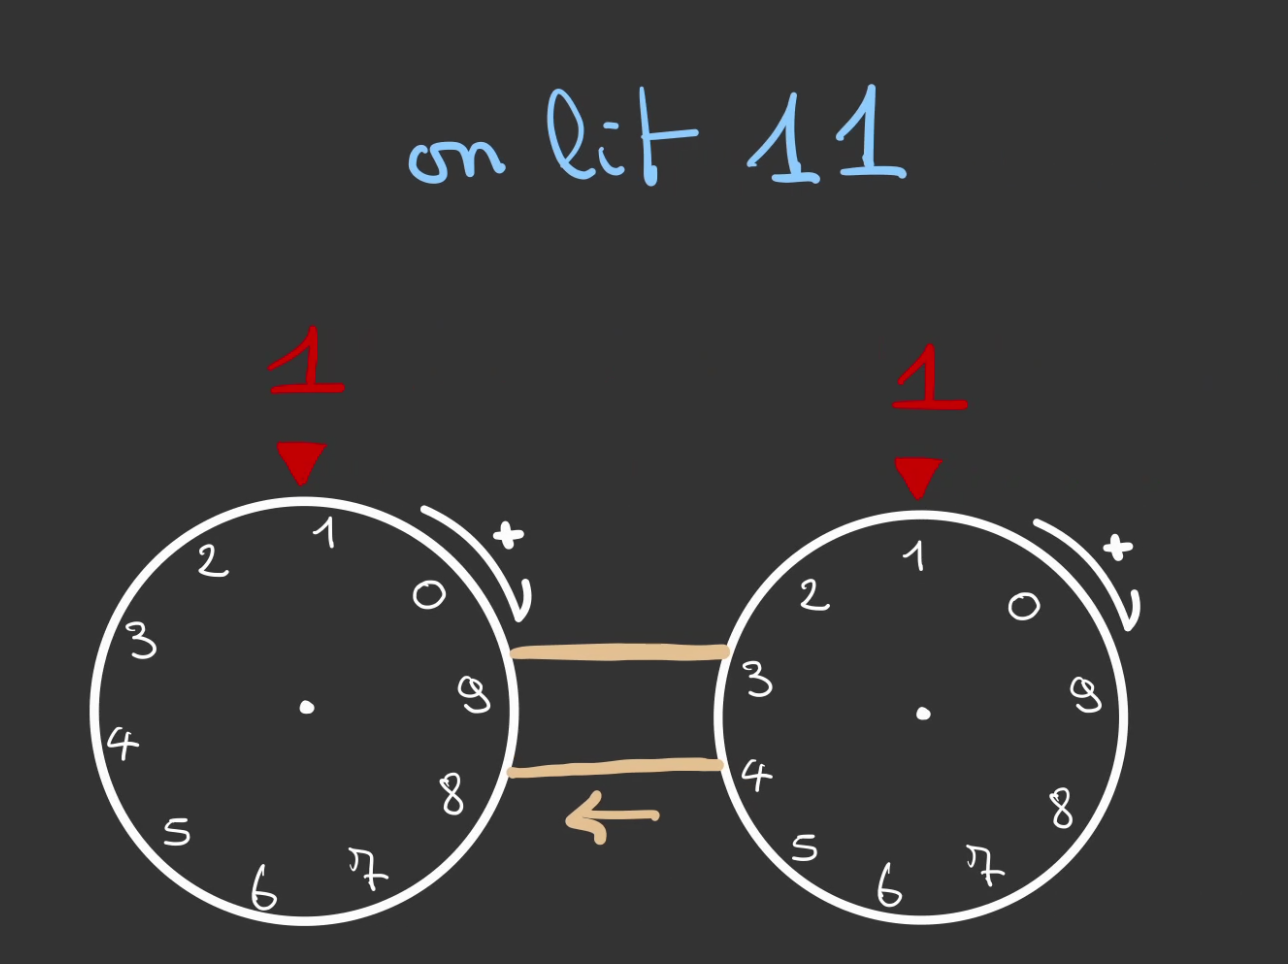 Deux roues graduées de 0 à 9 reliée par une courroie, les deux roues affichent 1